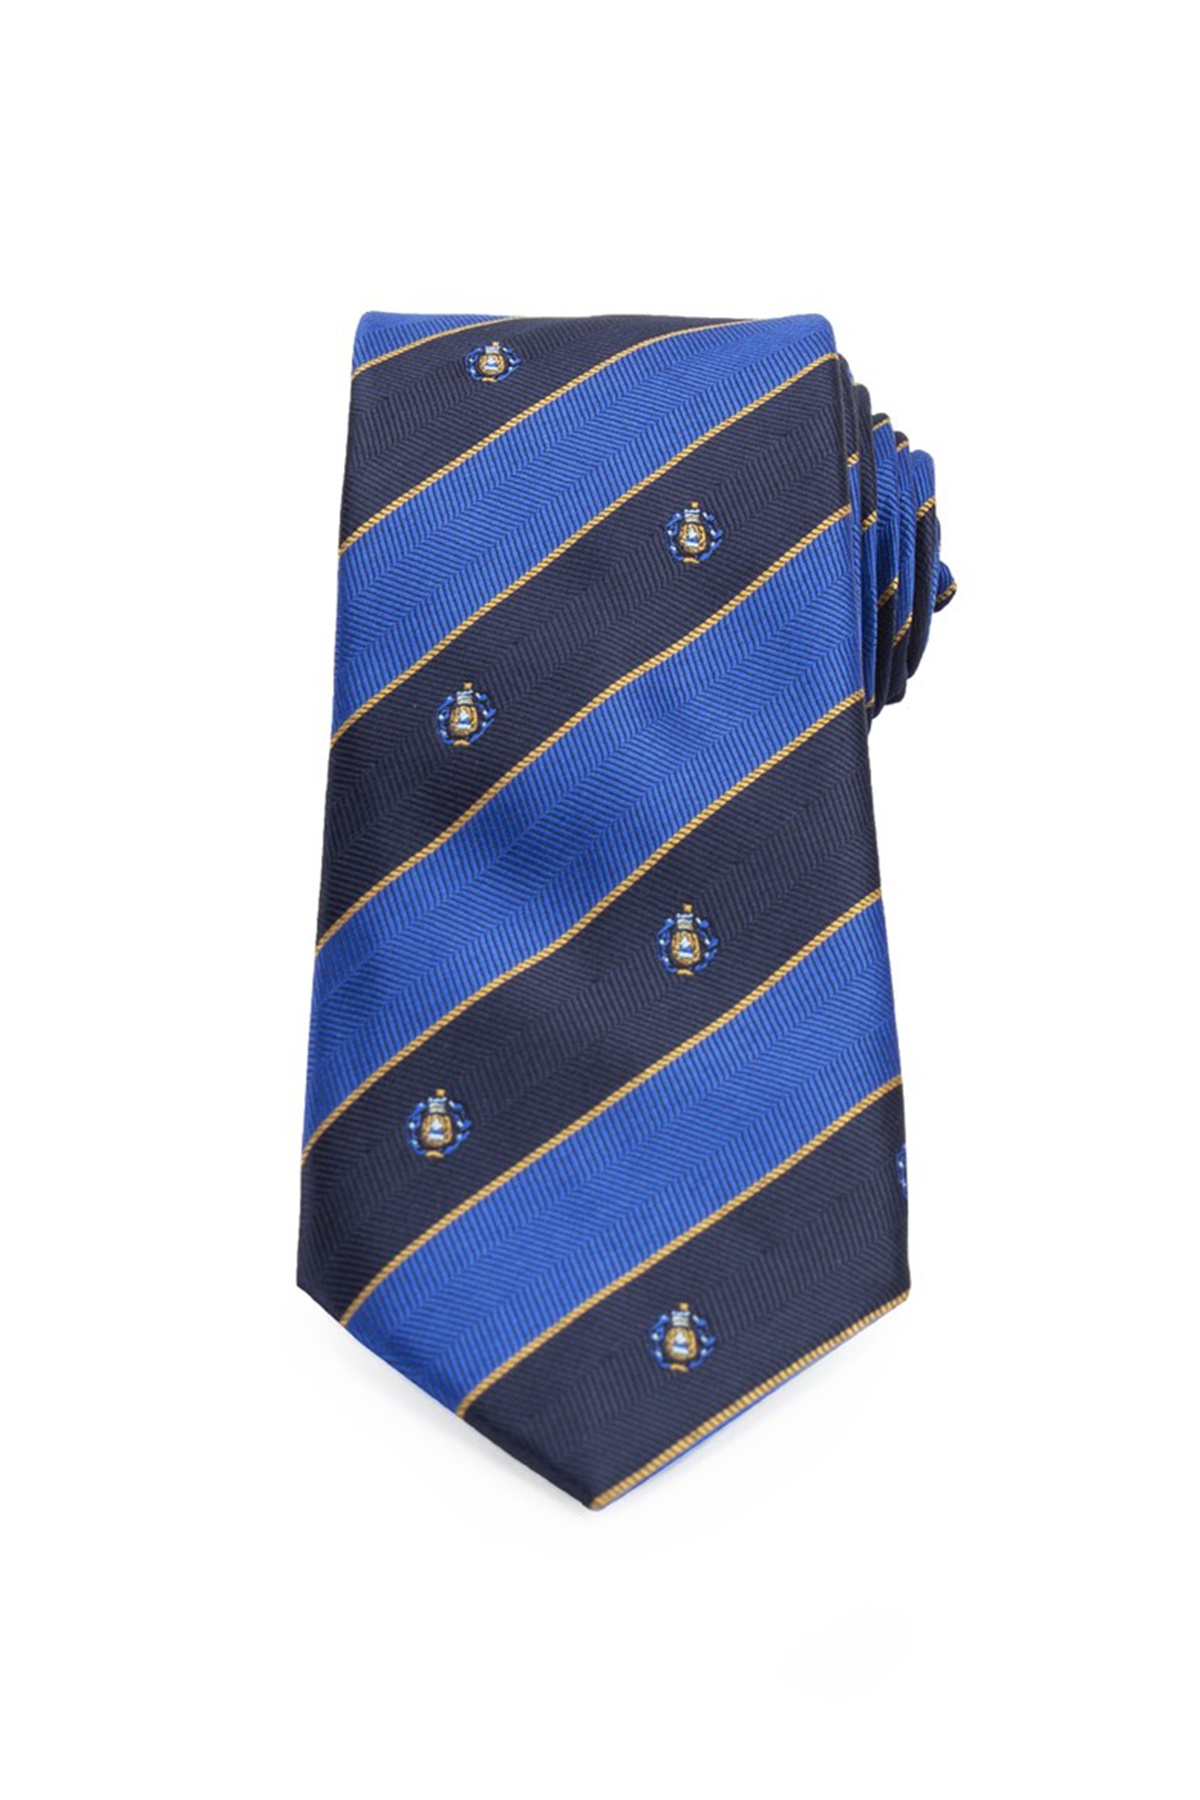 Kék csíkos klasszikus nyakkendő apró mintákkal